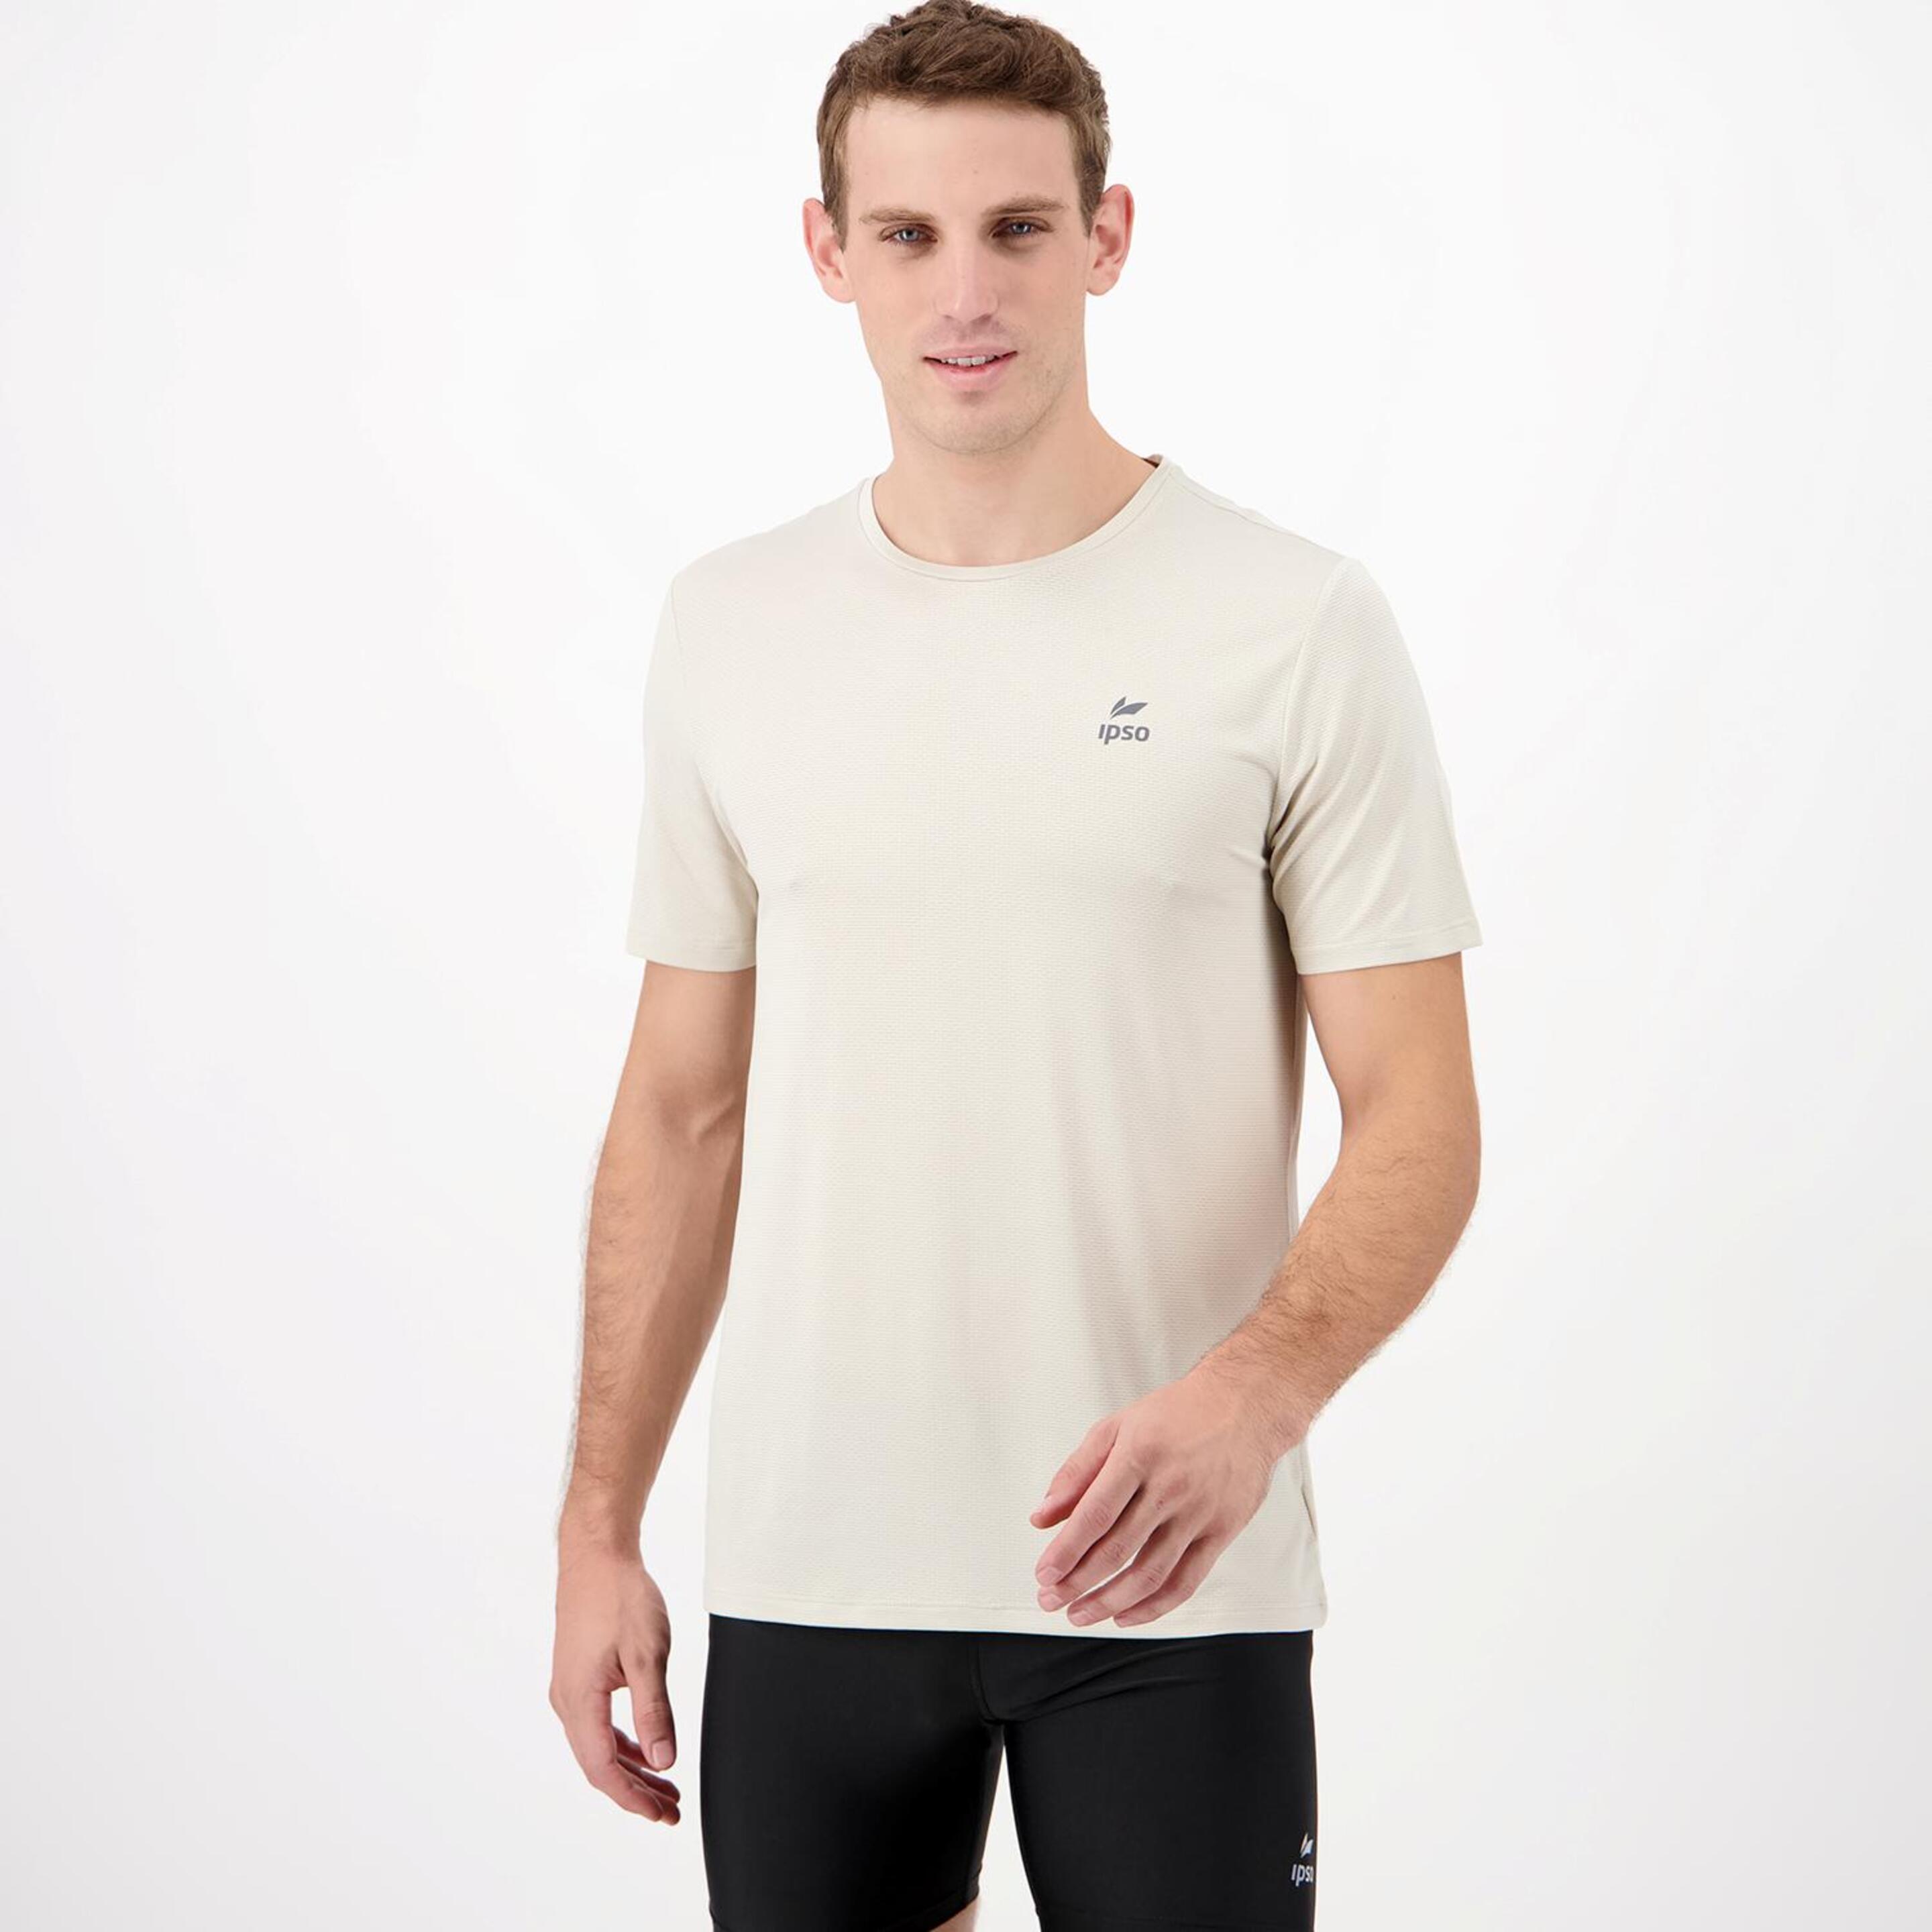 Ipso Basic - marron - Camiseta Running Hombre